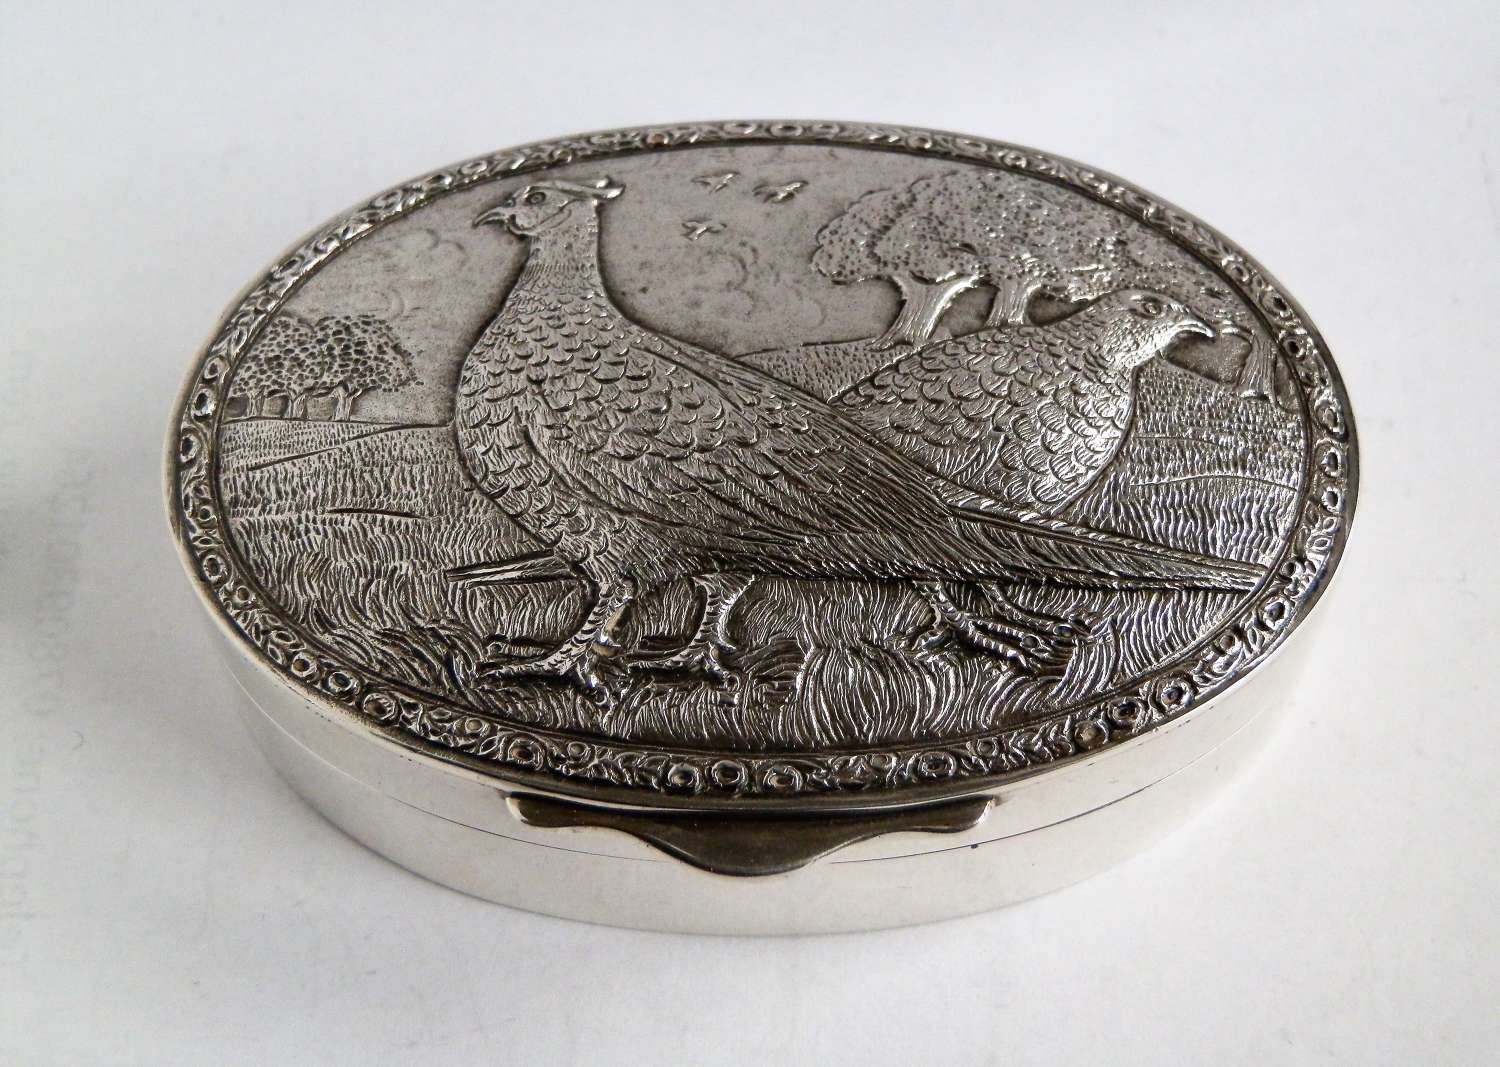 Elizabeth II silver snuff box with cast pheasants, 1983